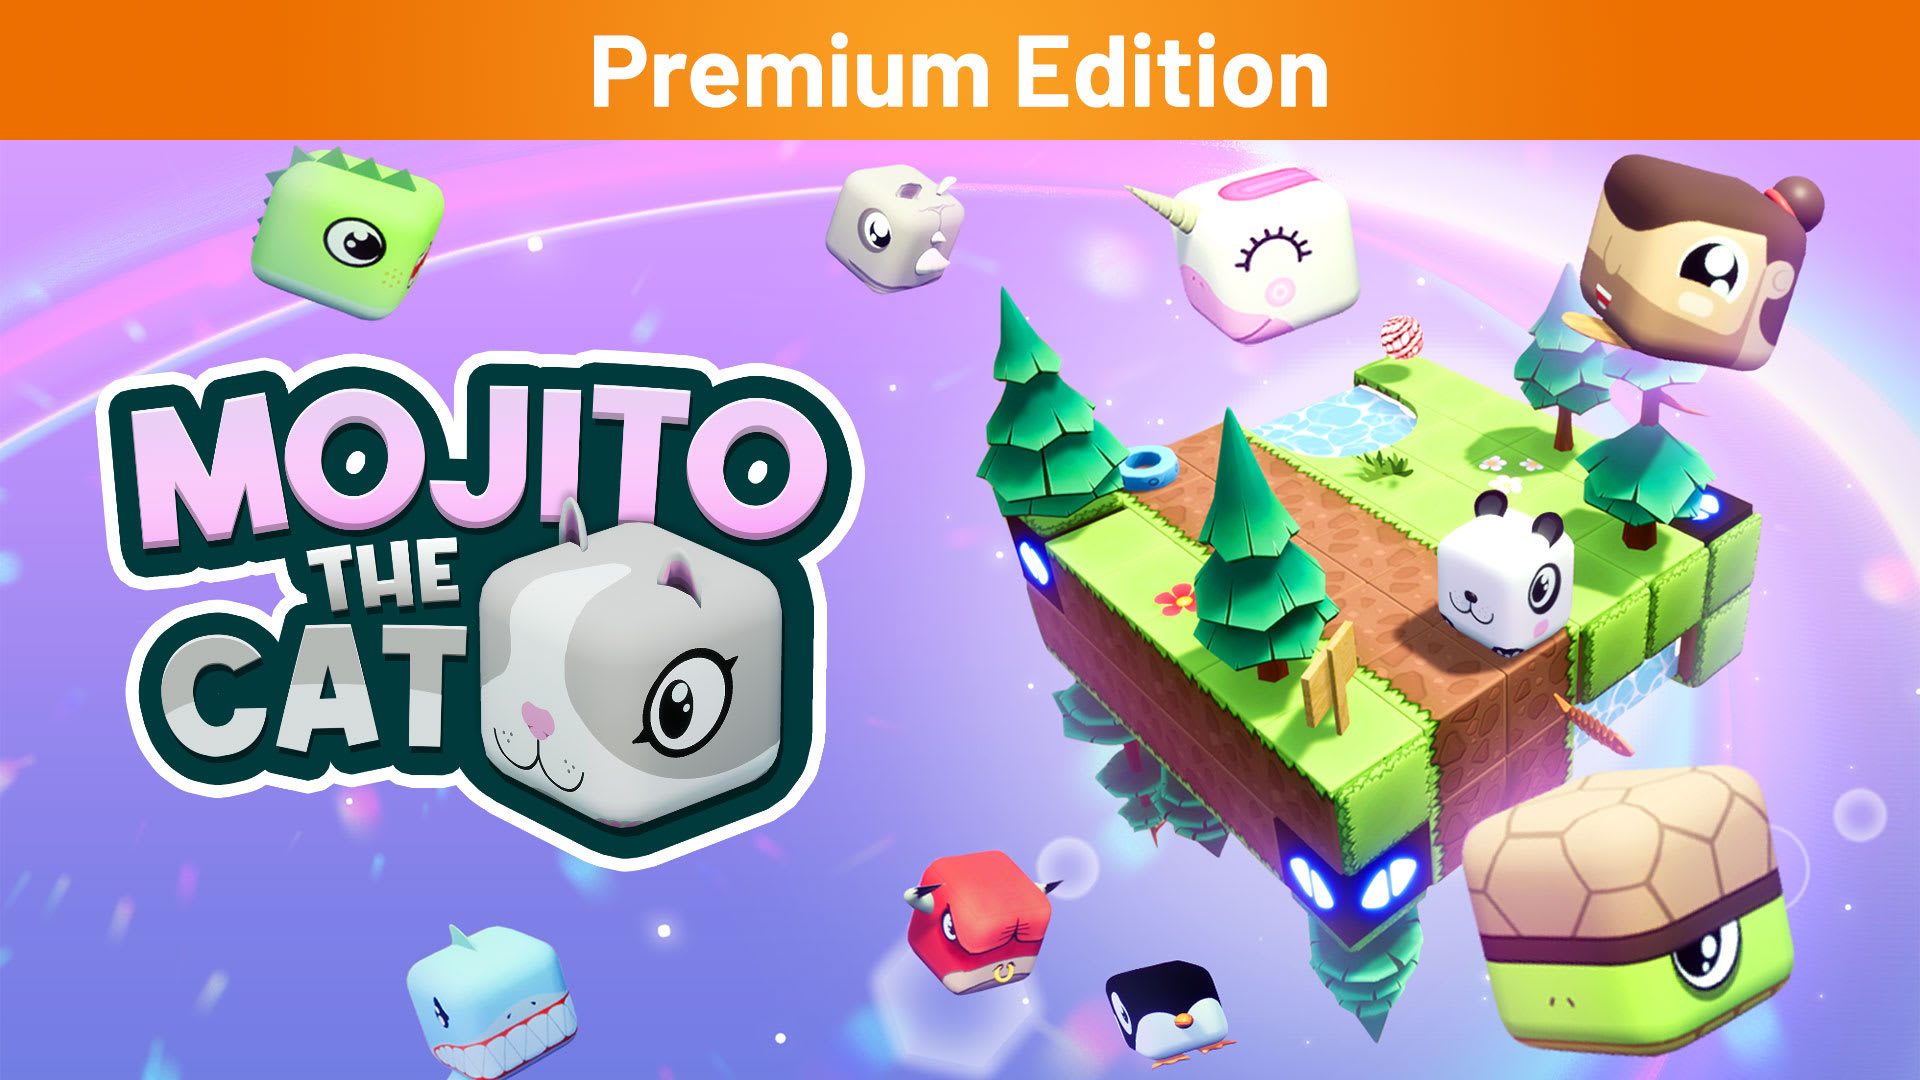 Mojito the Cat Premium Edition